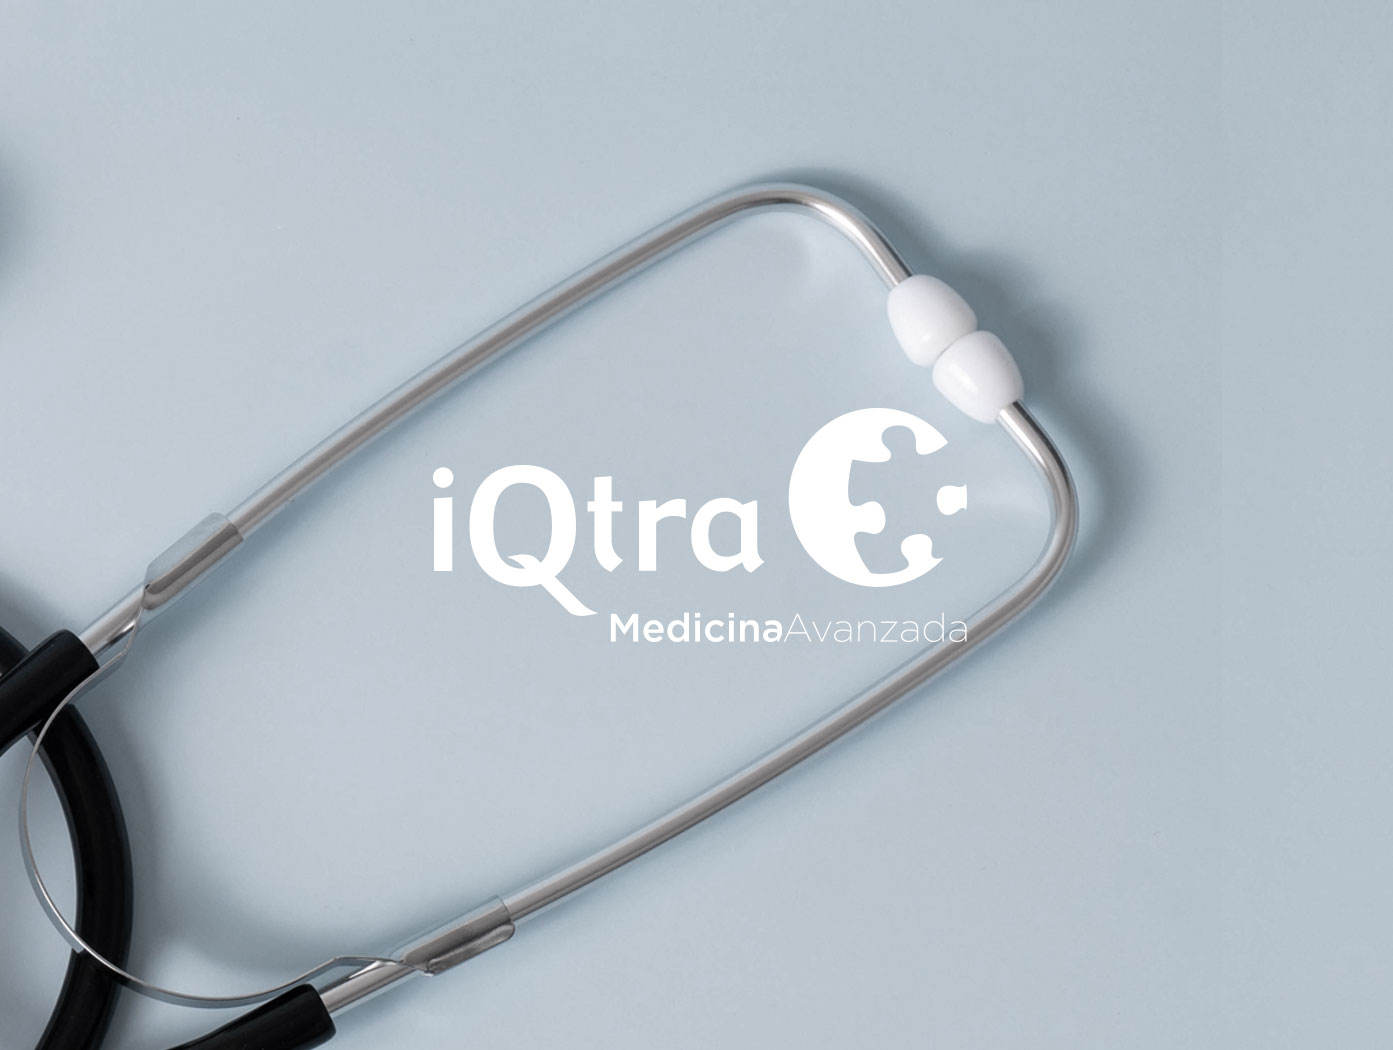 IQtra Medicina Avanzada